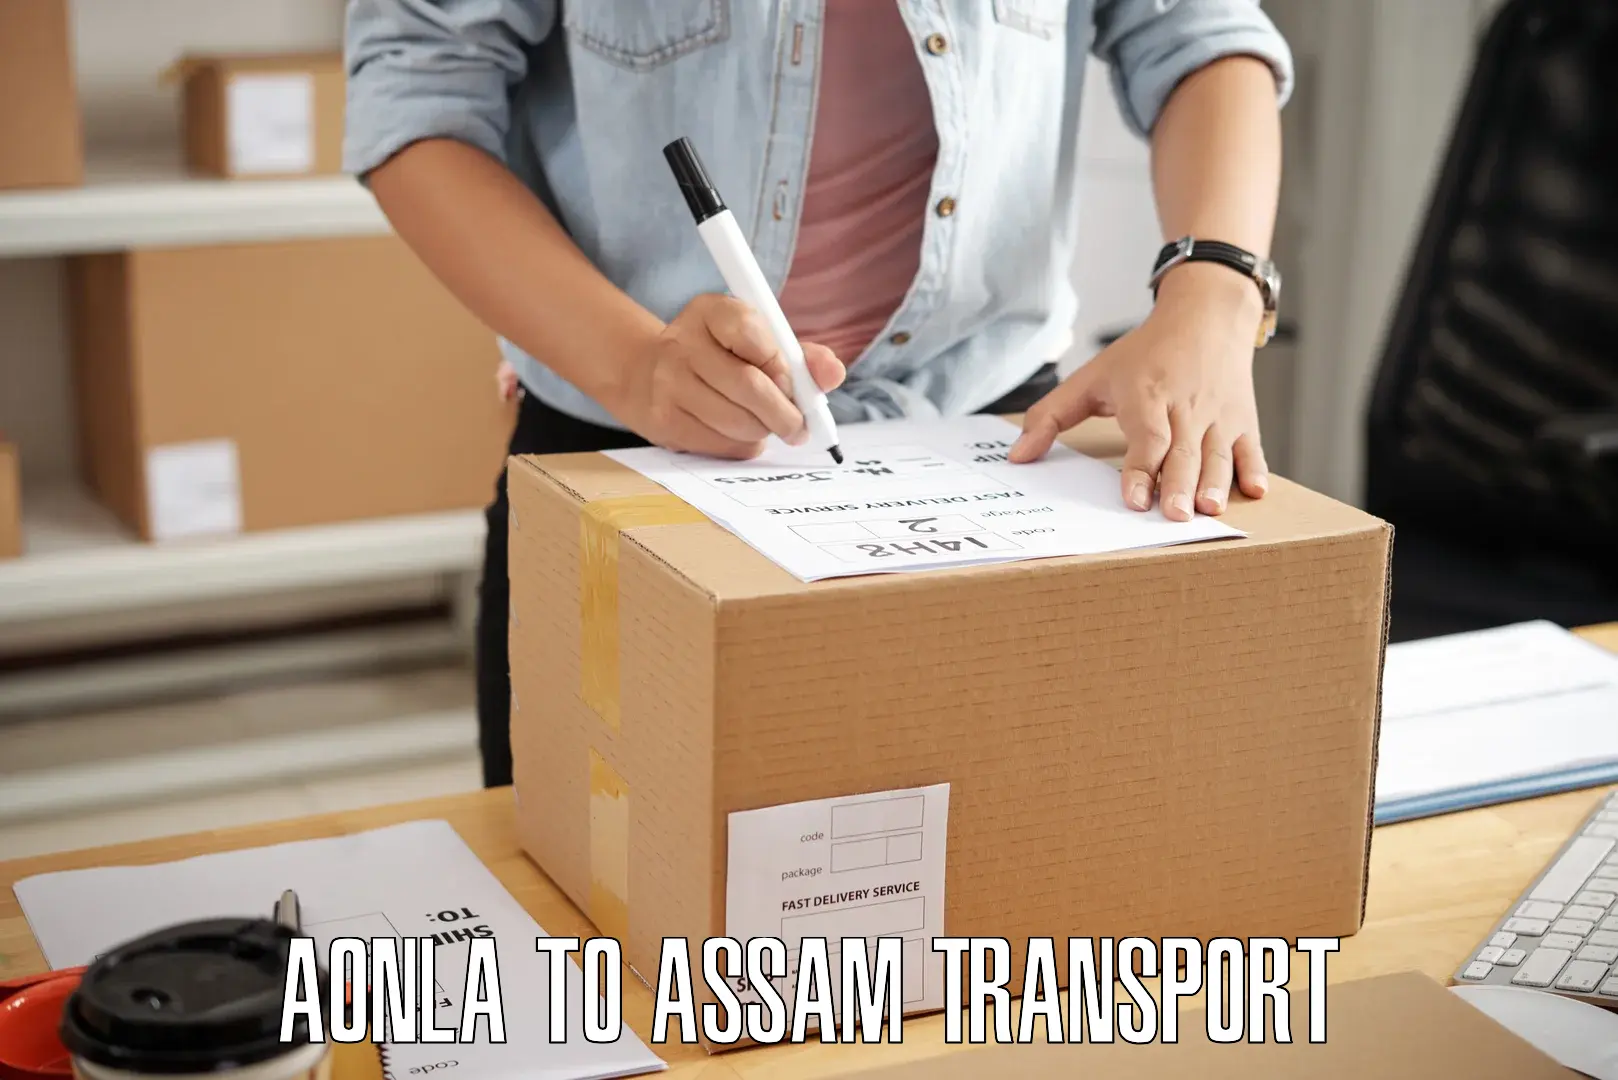 Express transport services Aonla to Assam